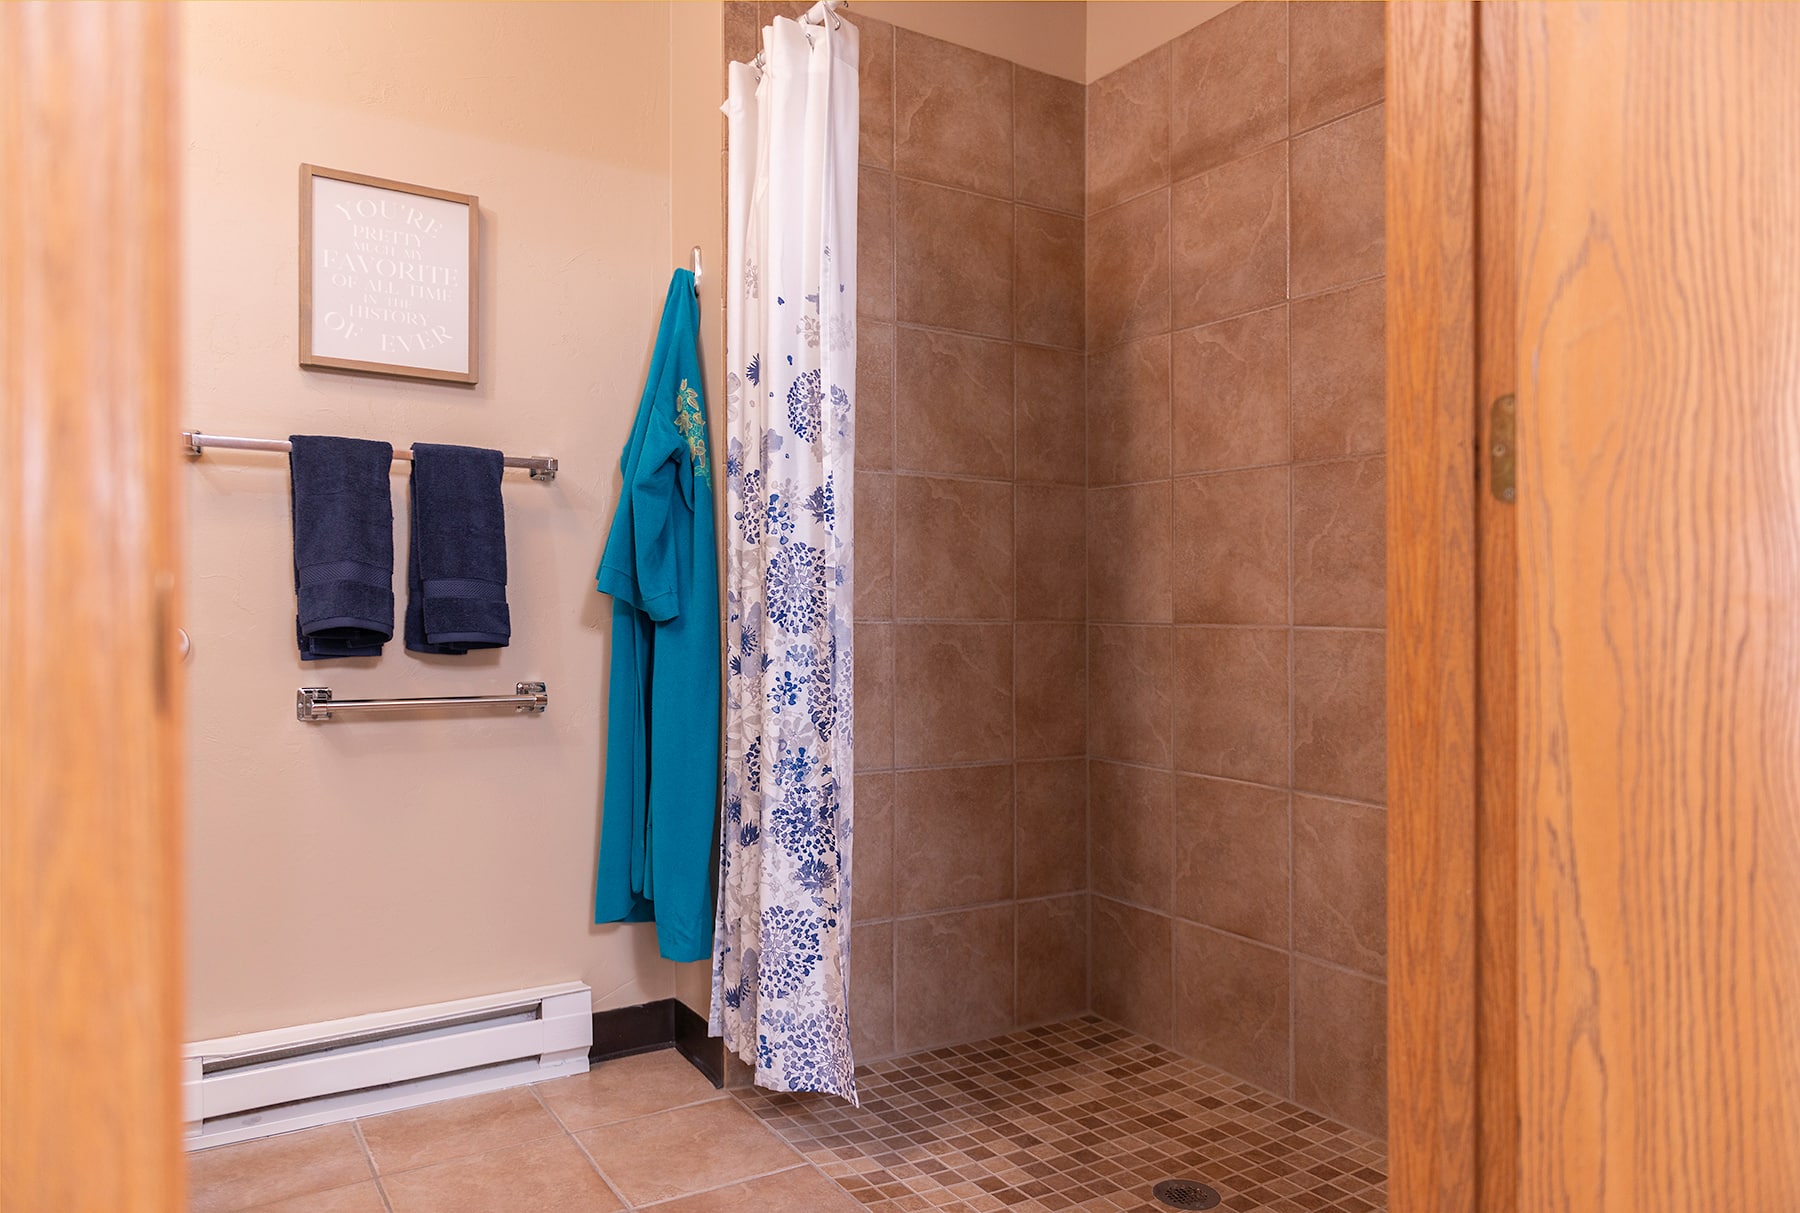 Marla Vista Assisted Living Model Apartment Bathroom